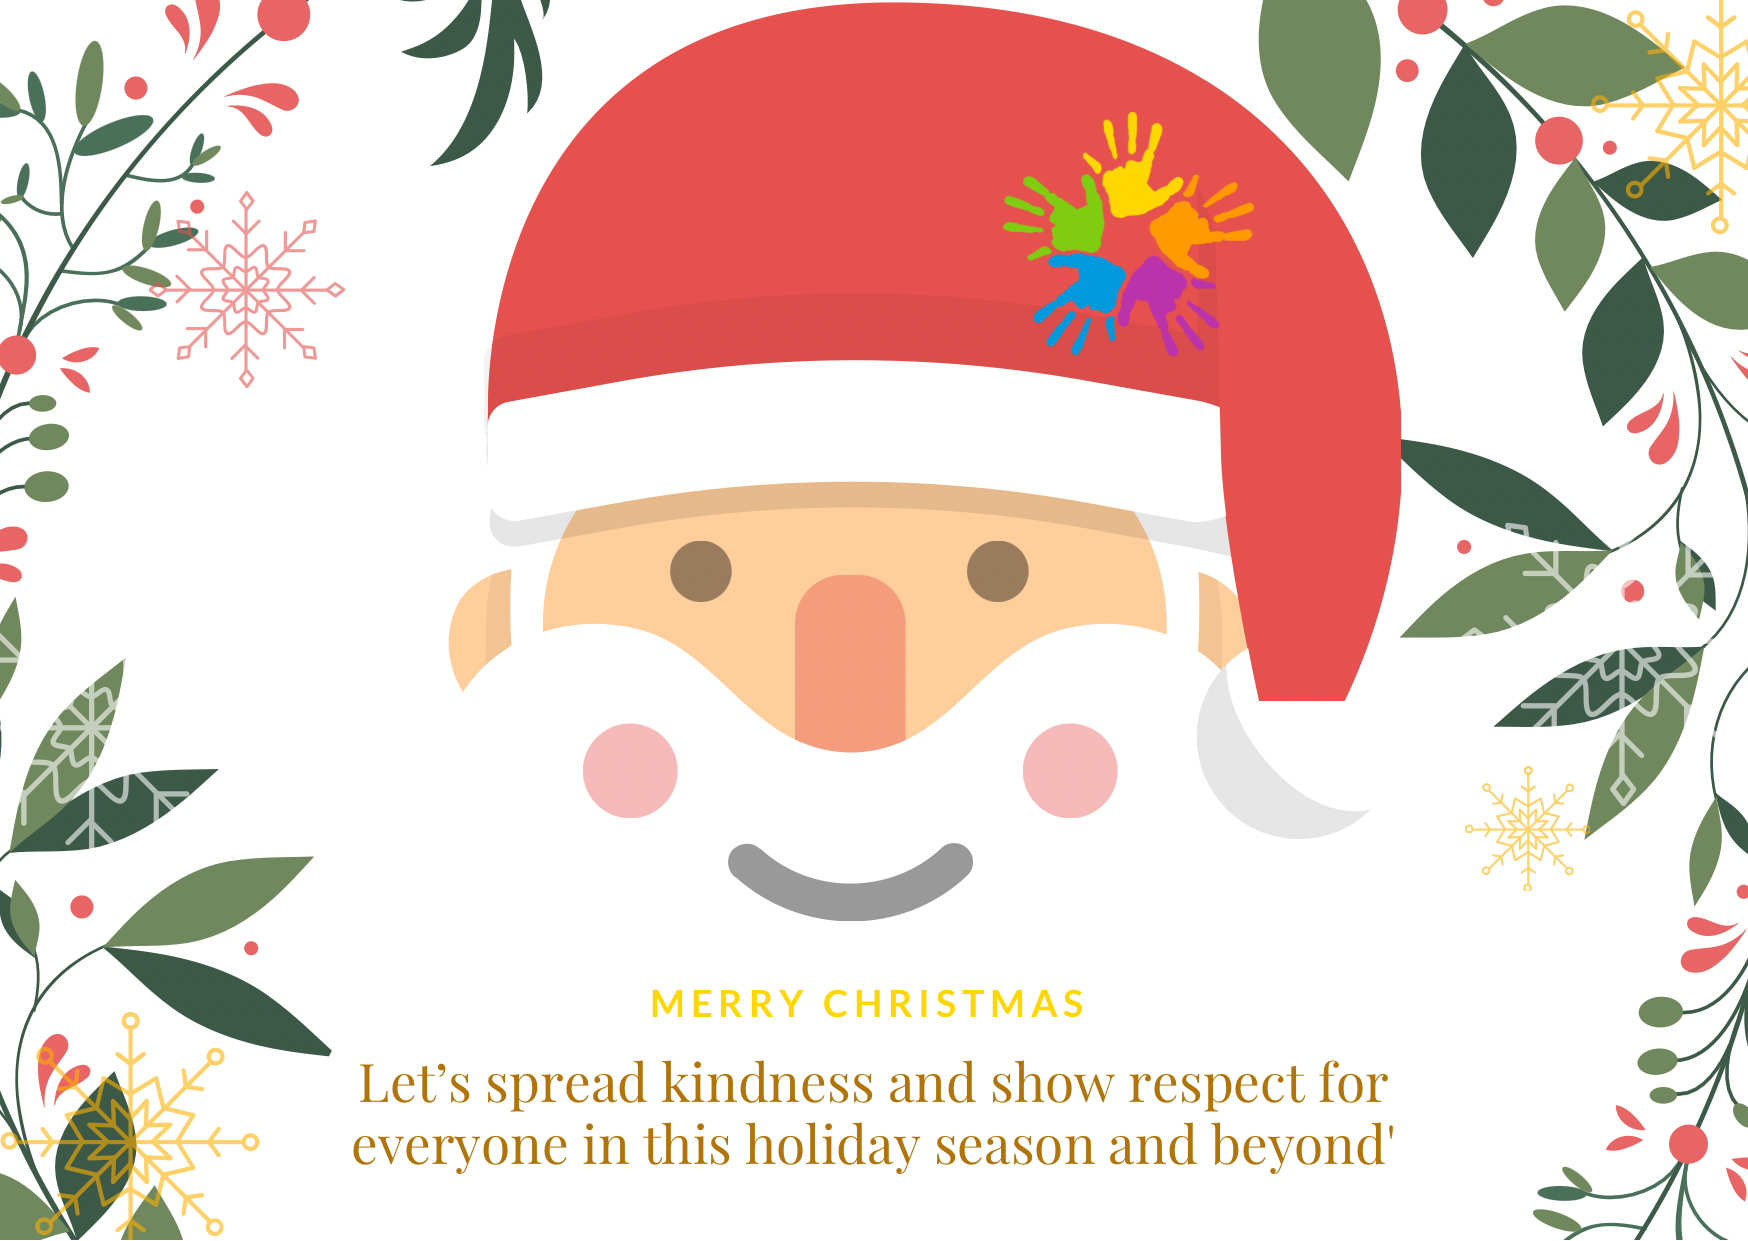 Christmas e-card designed by EOSA